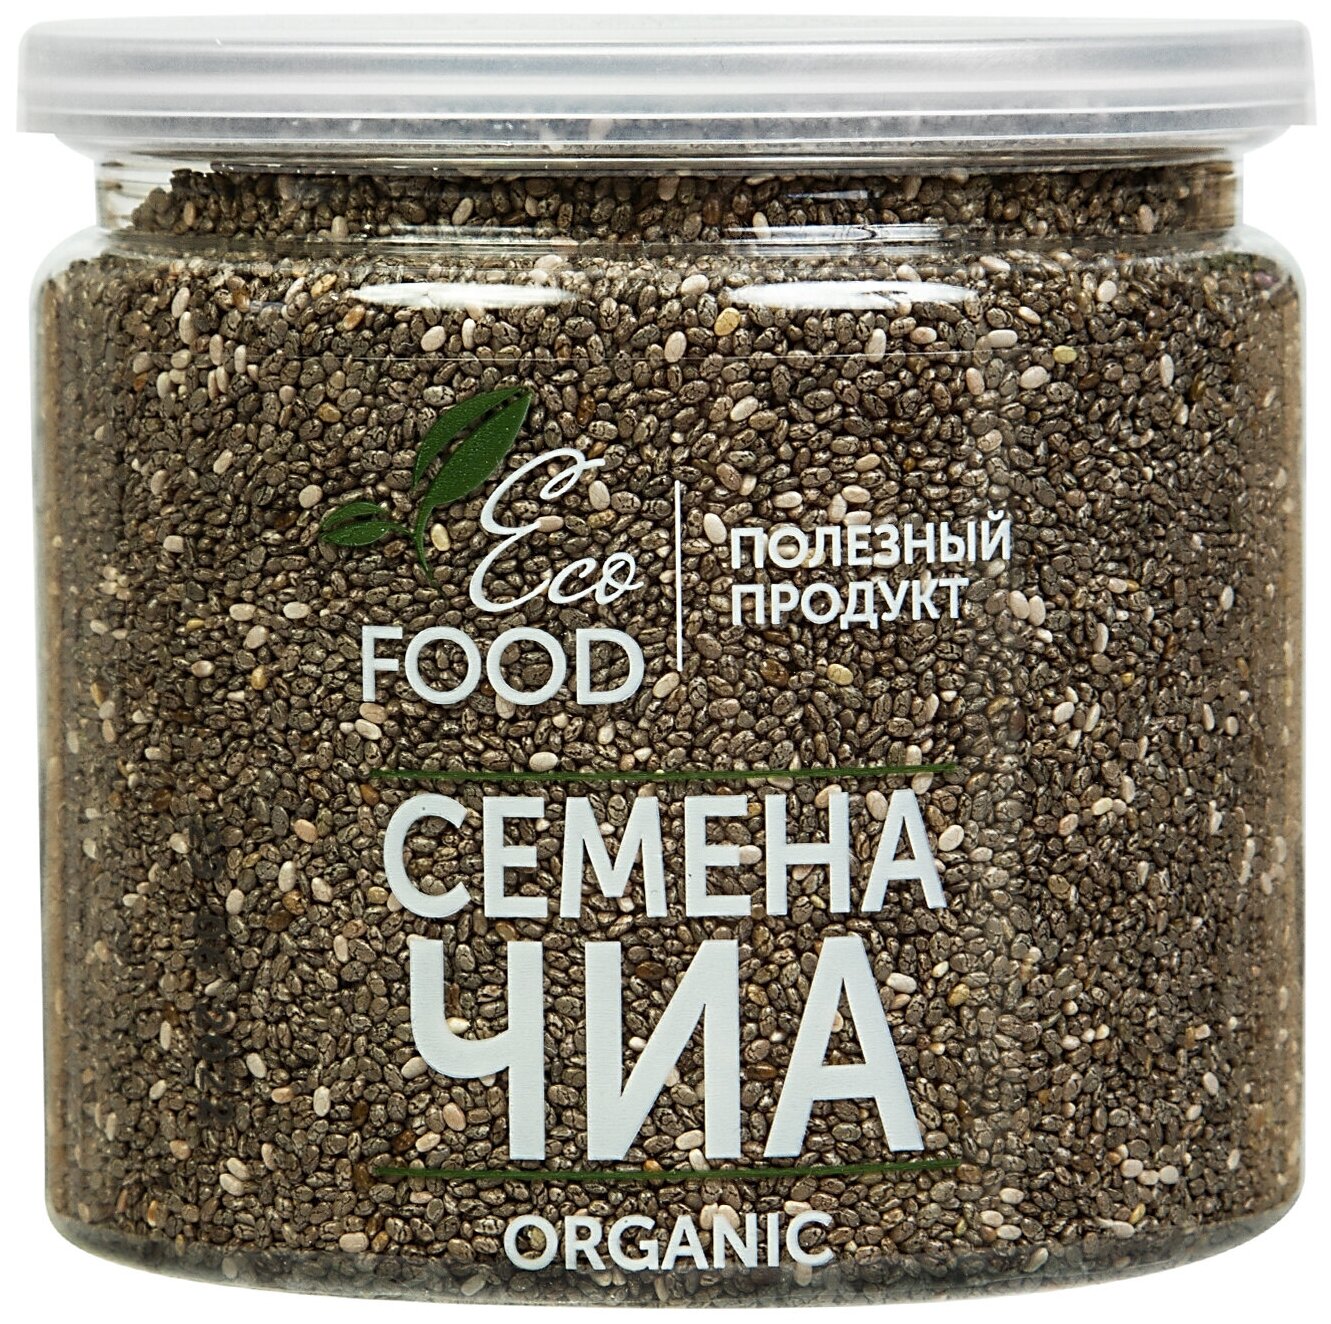 Семена чиа, Chia, Суперфуд для похудения и здоровья, Eco Food - Полезный продукт